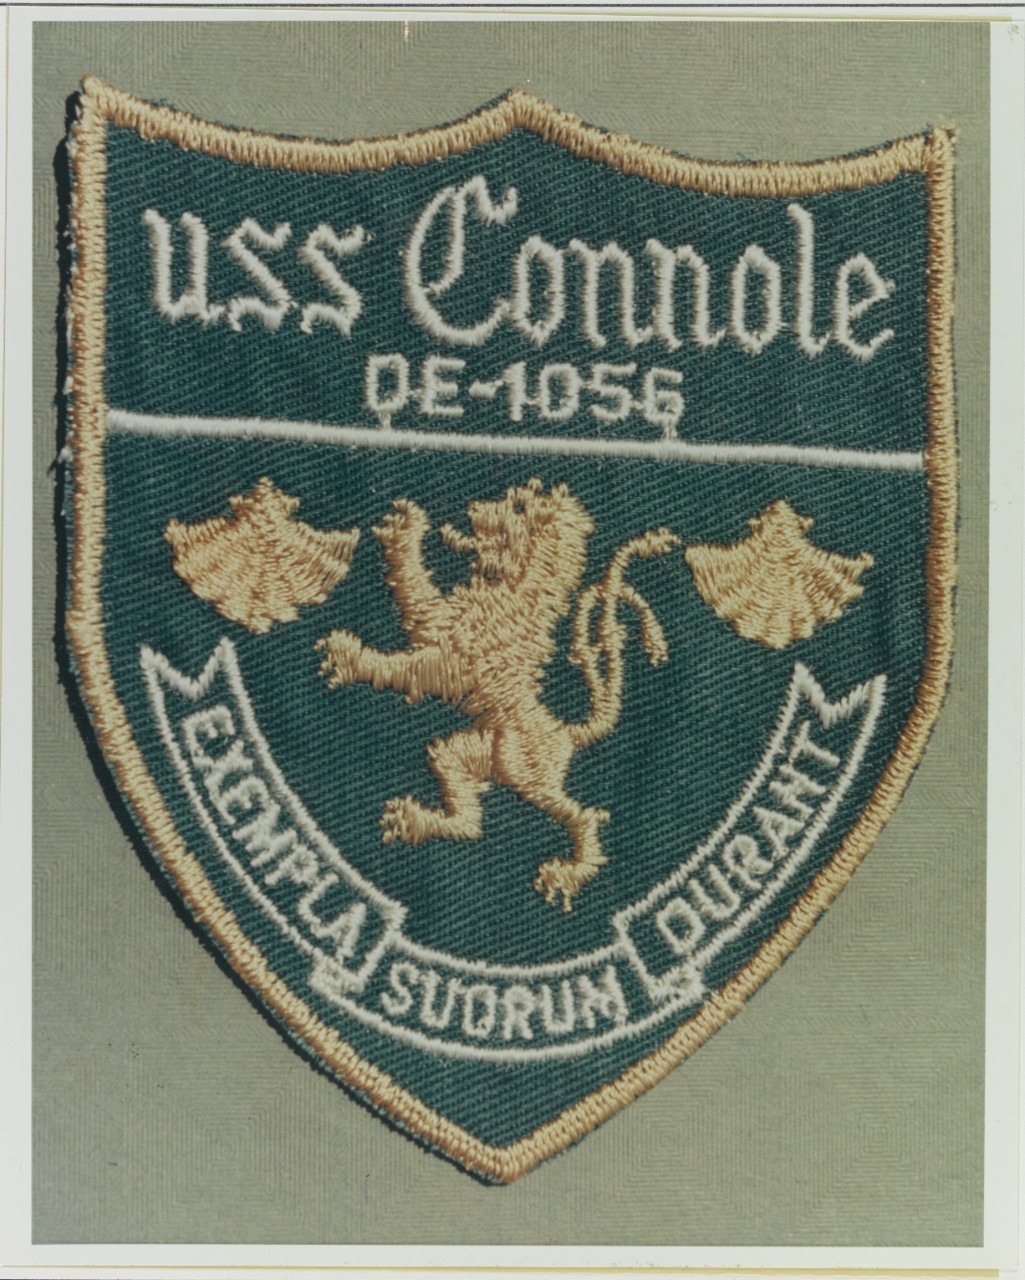 Insignia: USS CONNOLE (DE-1056)